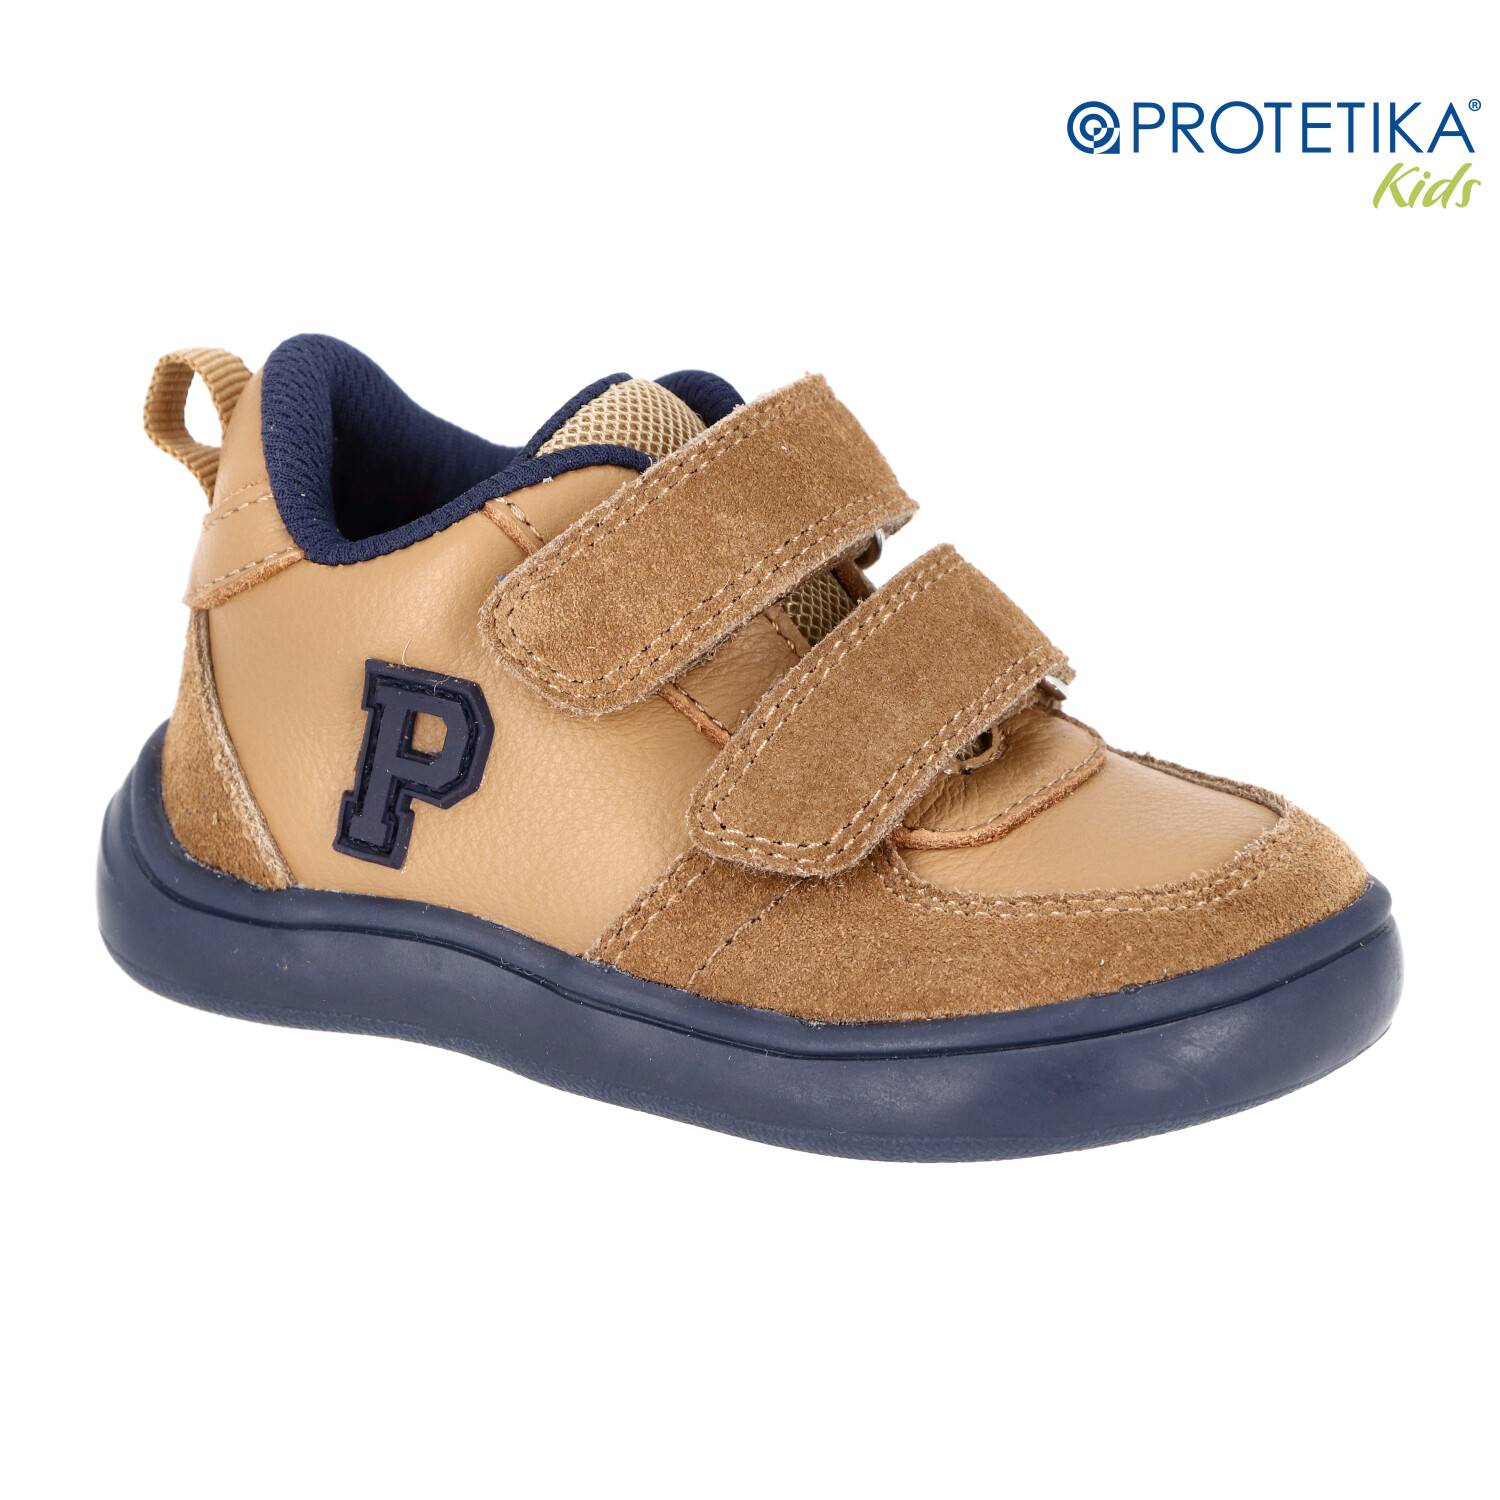 Protetika - barefootové topánky DEXTER brown